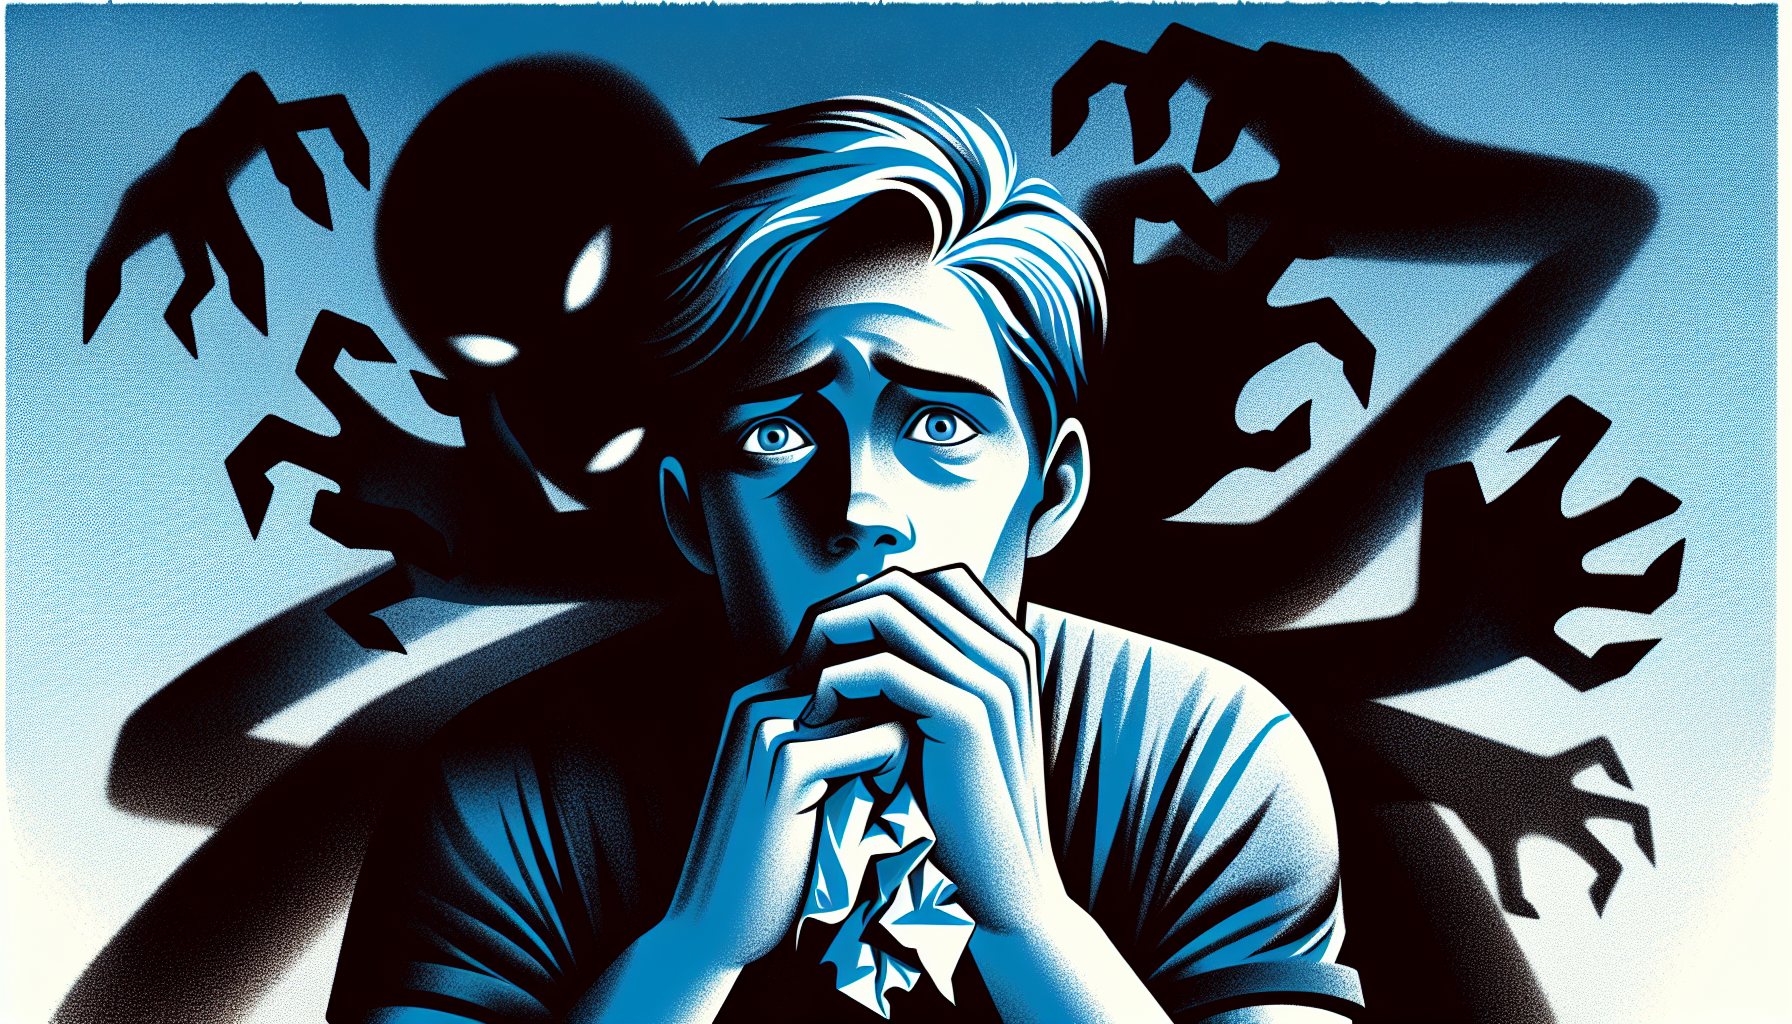 Illustrazione di una persona preoccupata e agitata mostrando sintomi di ansia